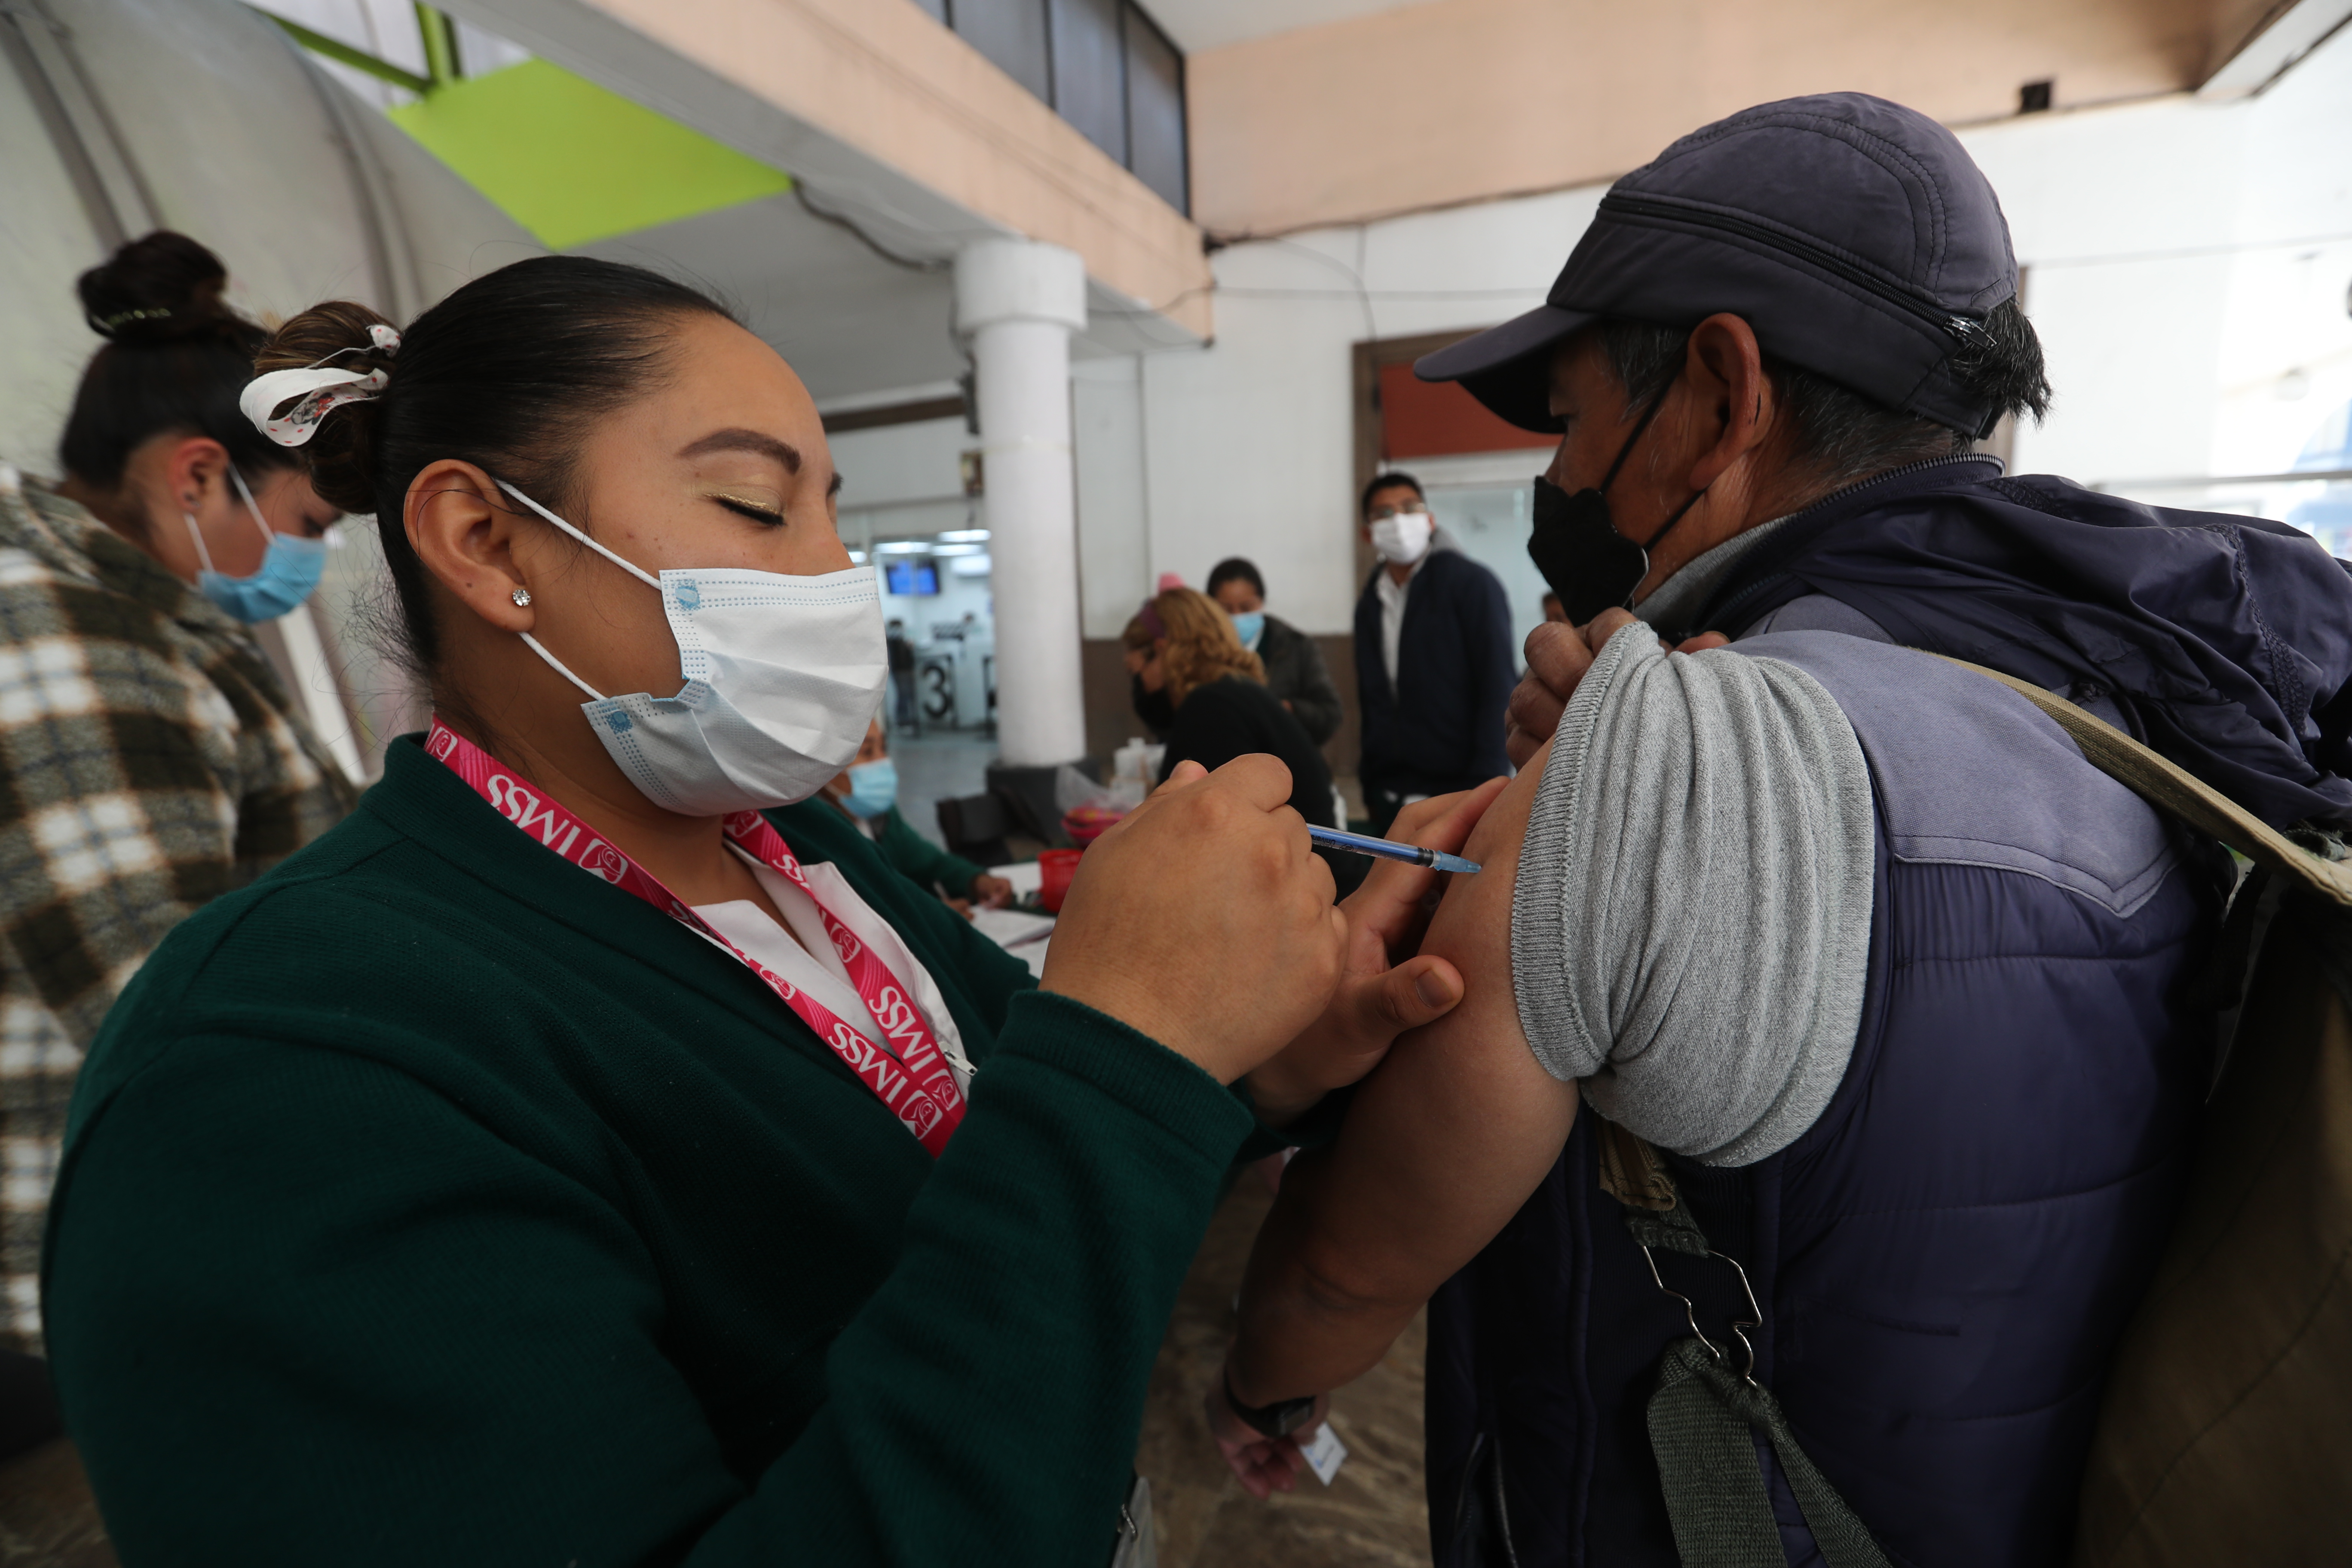 Arranca vacunación contra la influenza en la Concha Acústica de Toluca